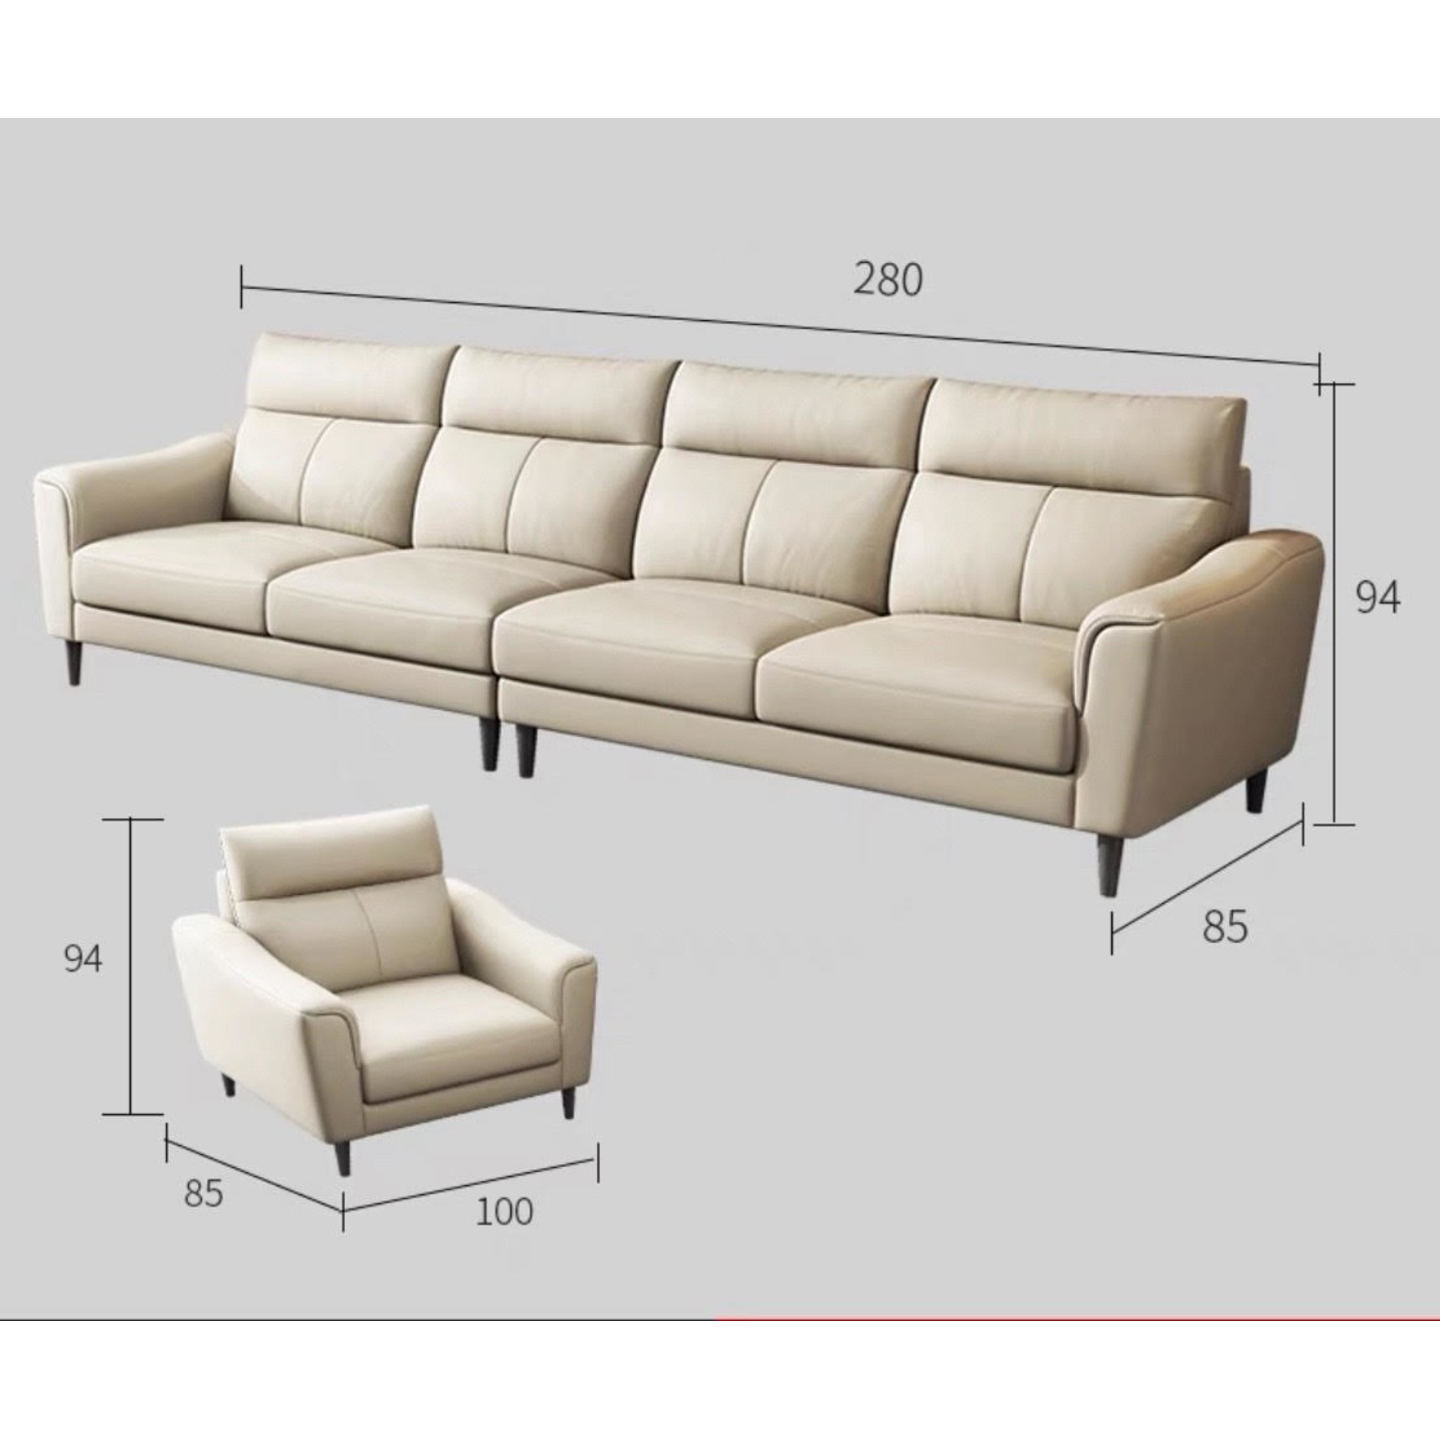 Nappa Premium Italian Sofa Contact Leather - Four Seater + Single Seater